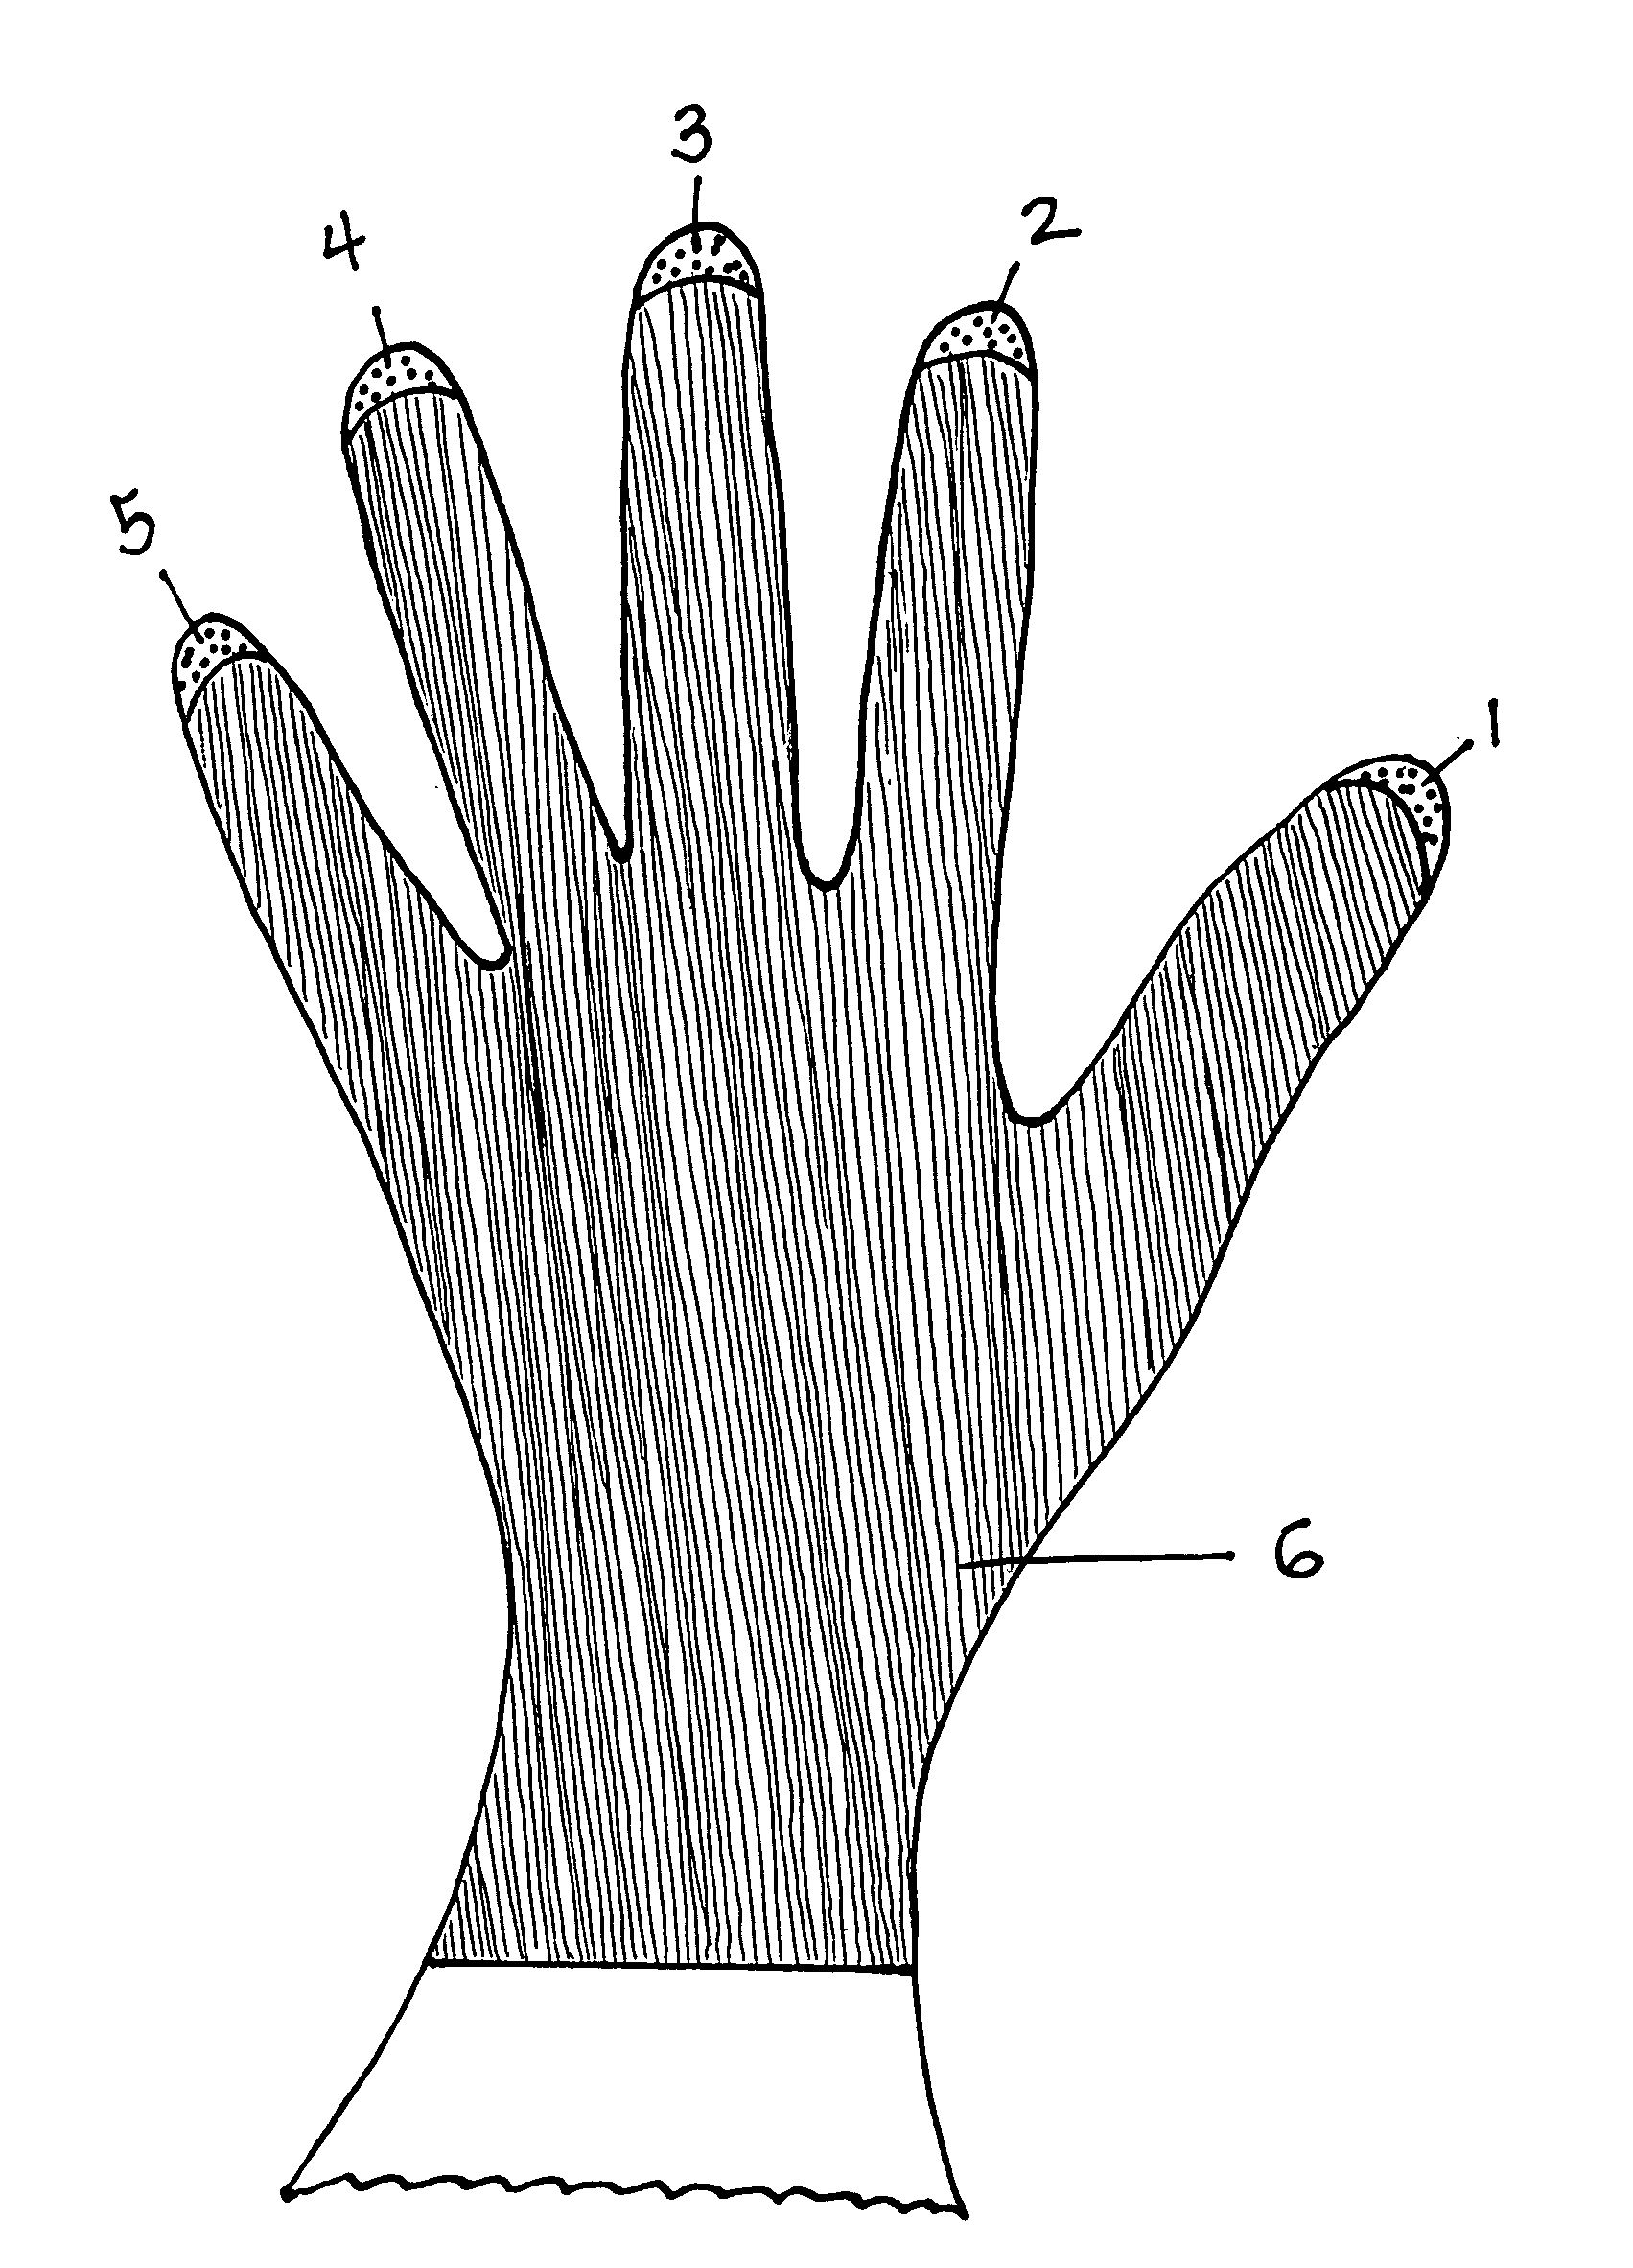 Fingernail protection work gloves